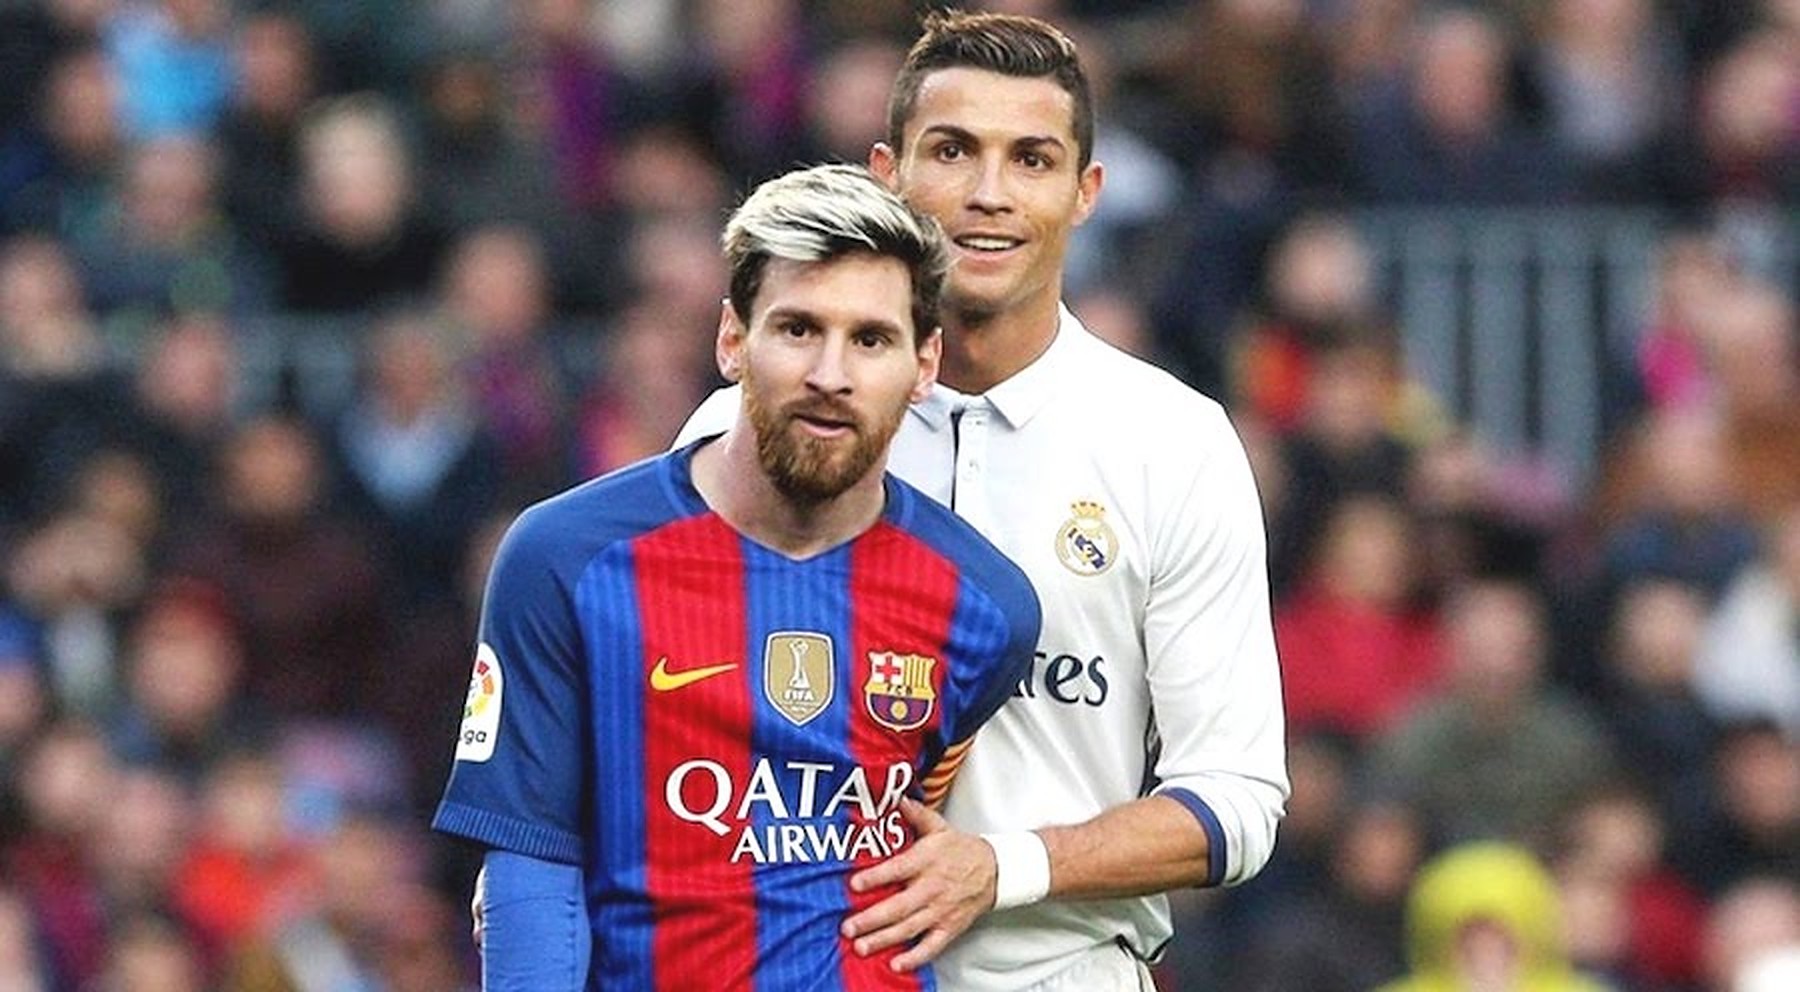 Gap between Messi and Ronaldo has never been clearer